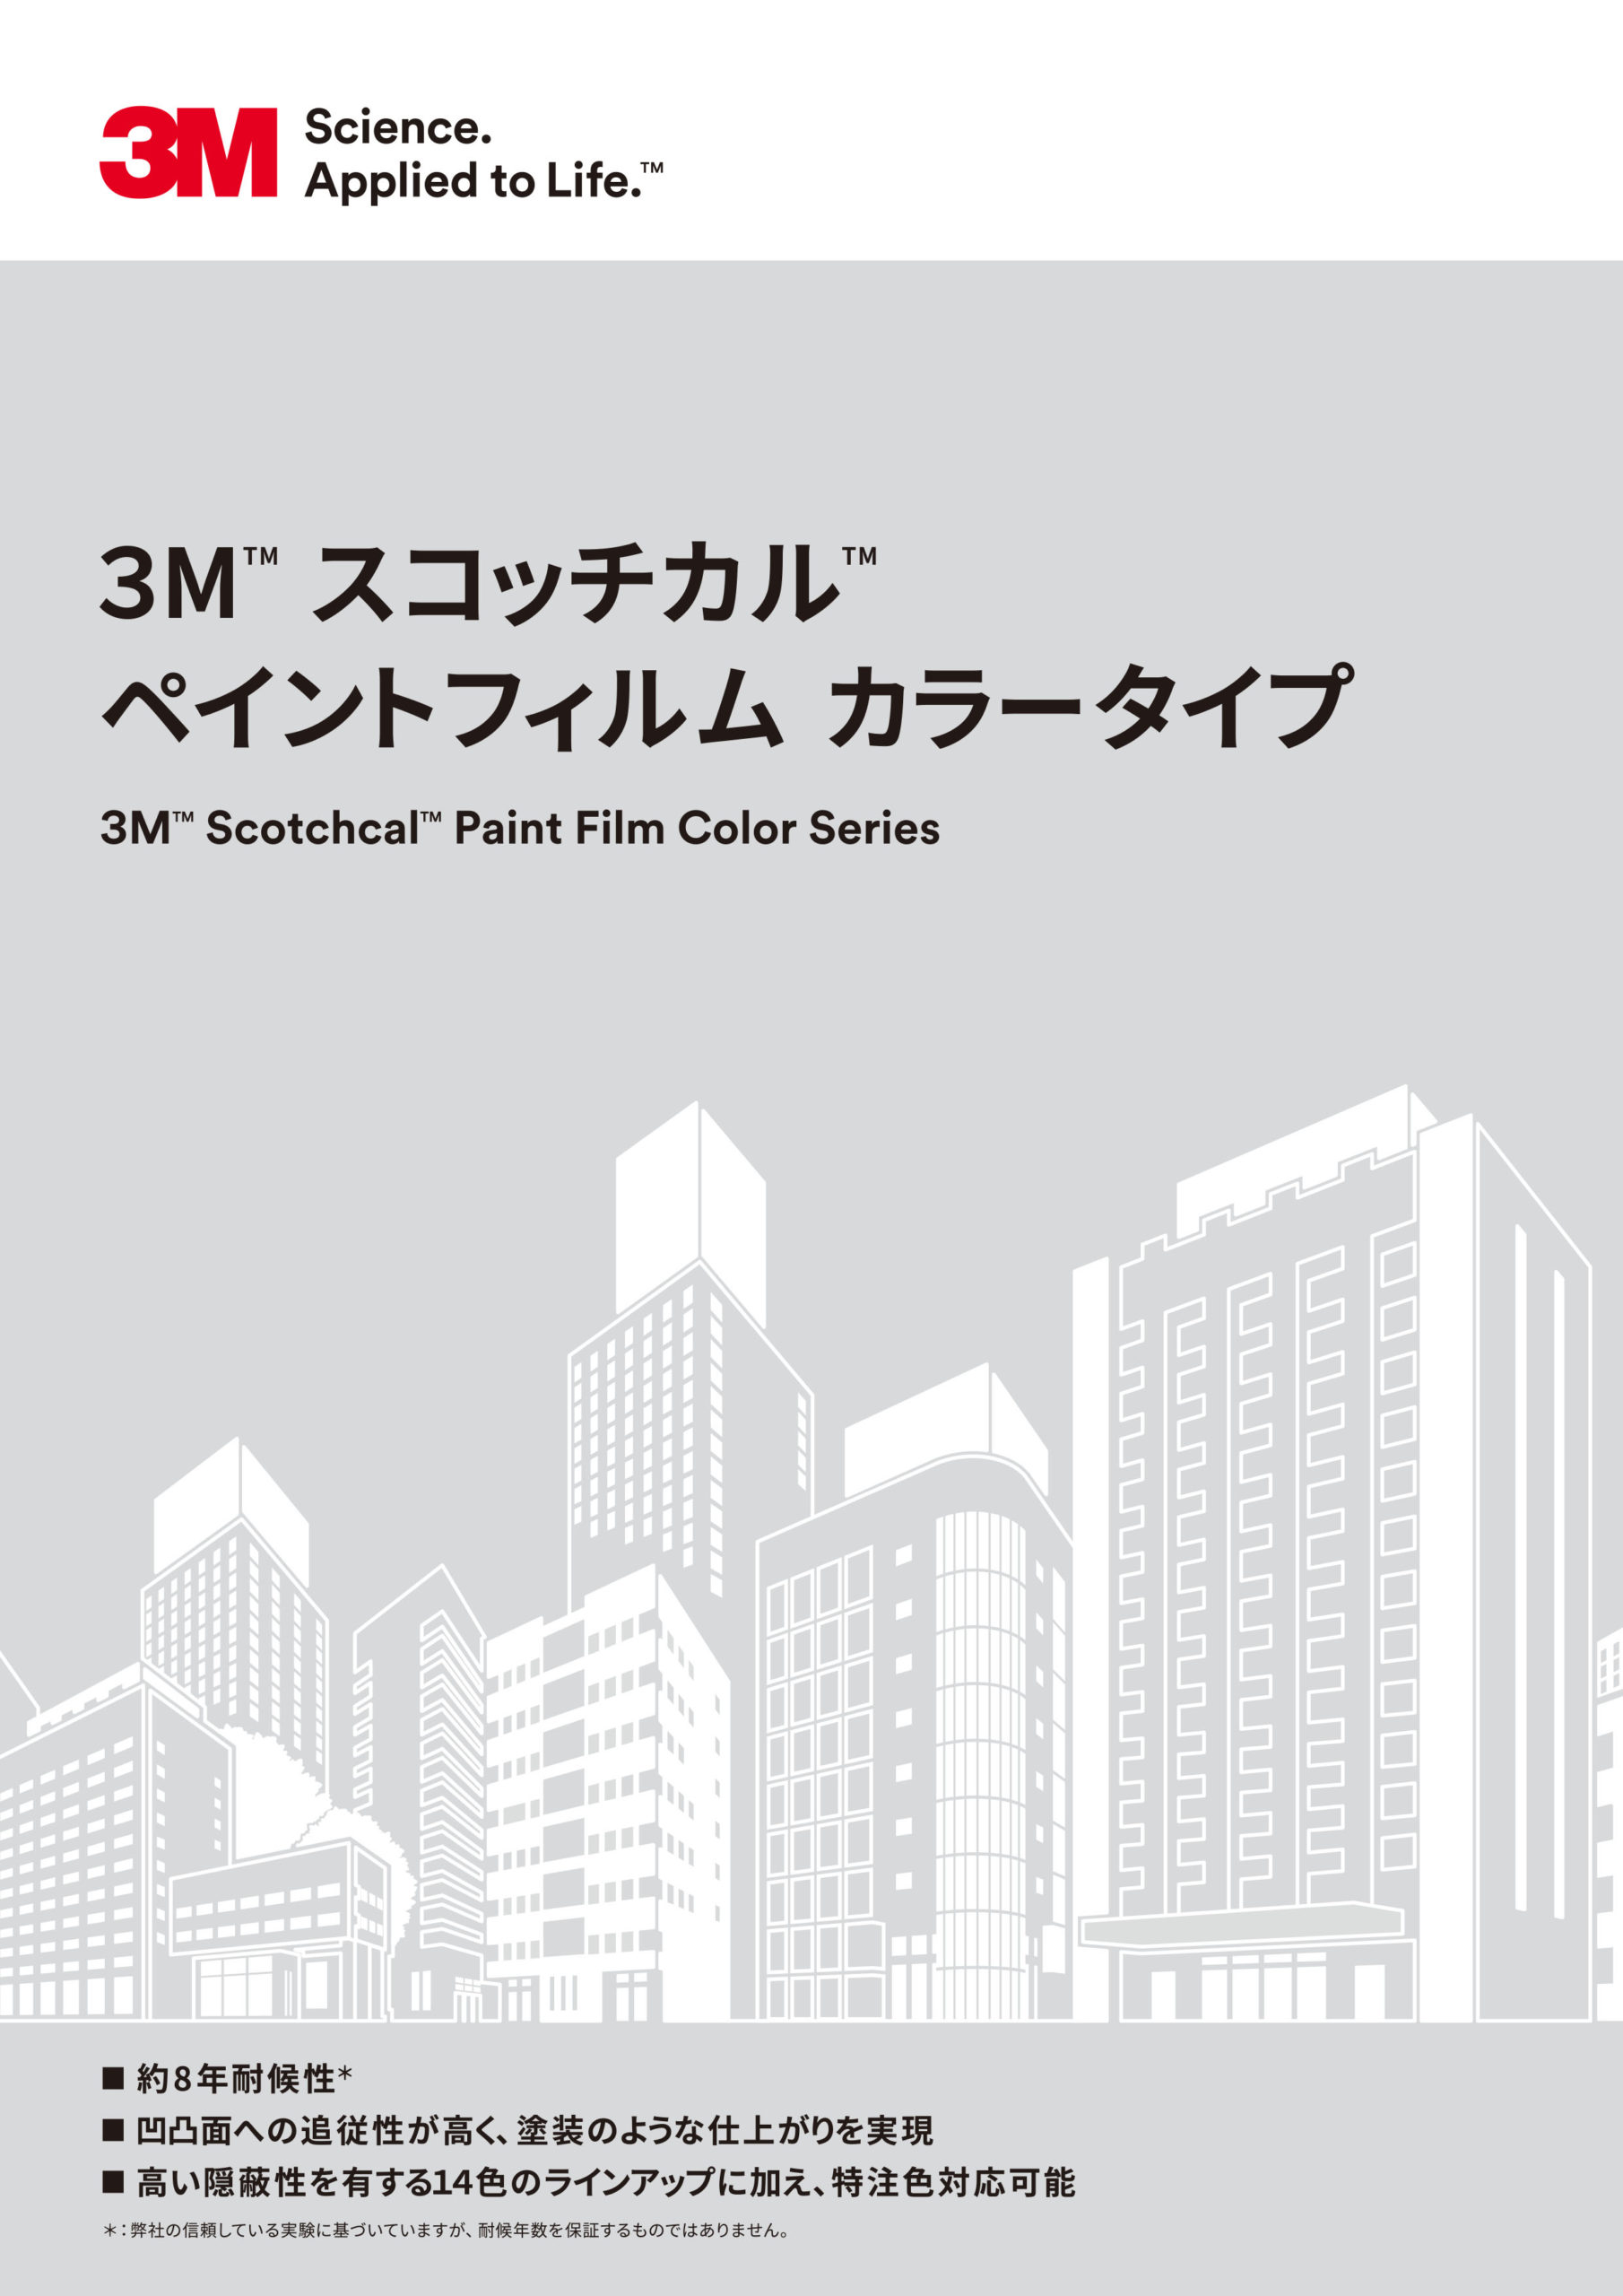 3M™ スコッチカル™ ペイントフィルム カラータイプ 見本帳のアイキャッチ